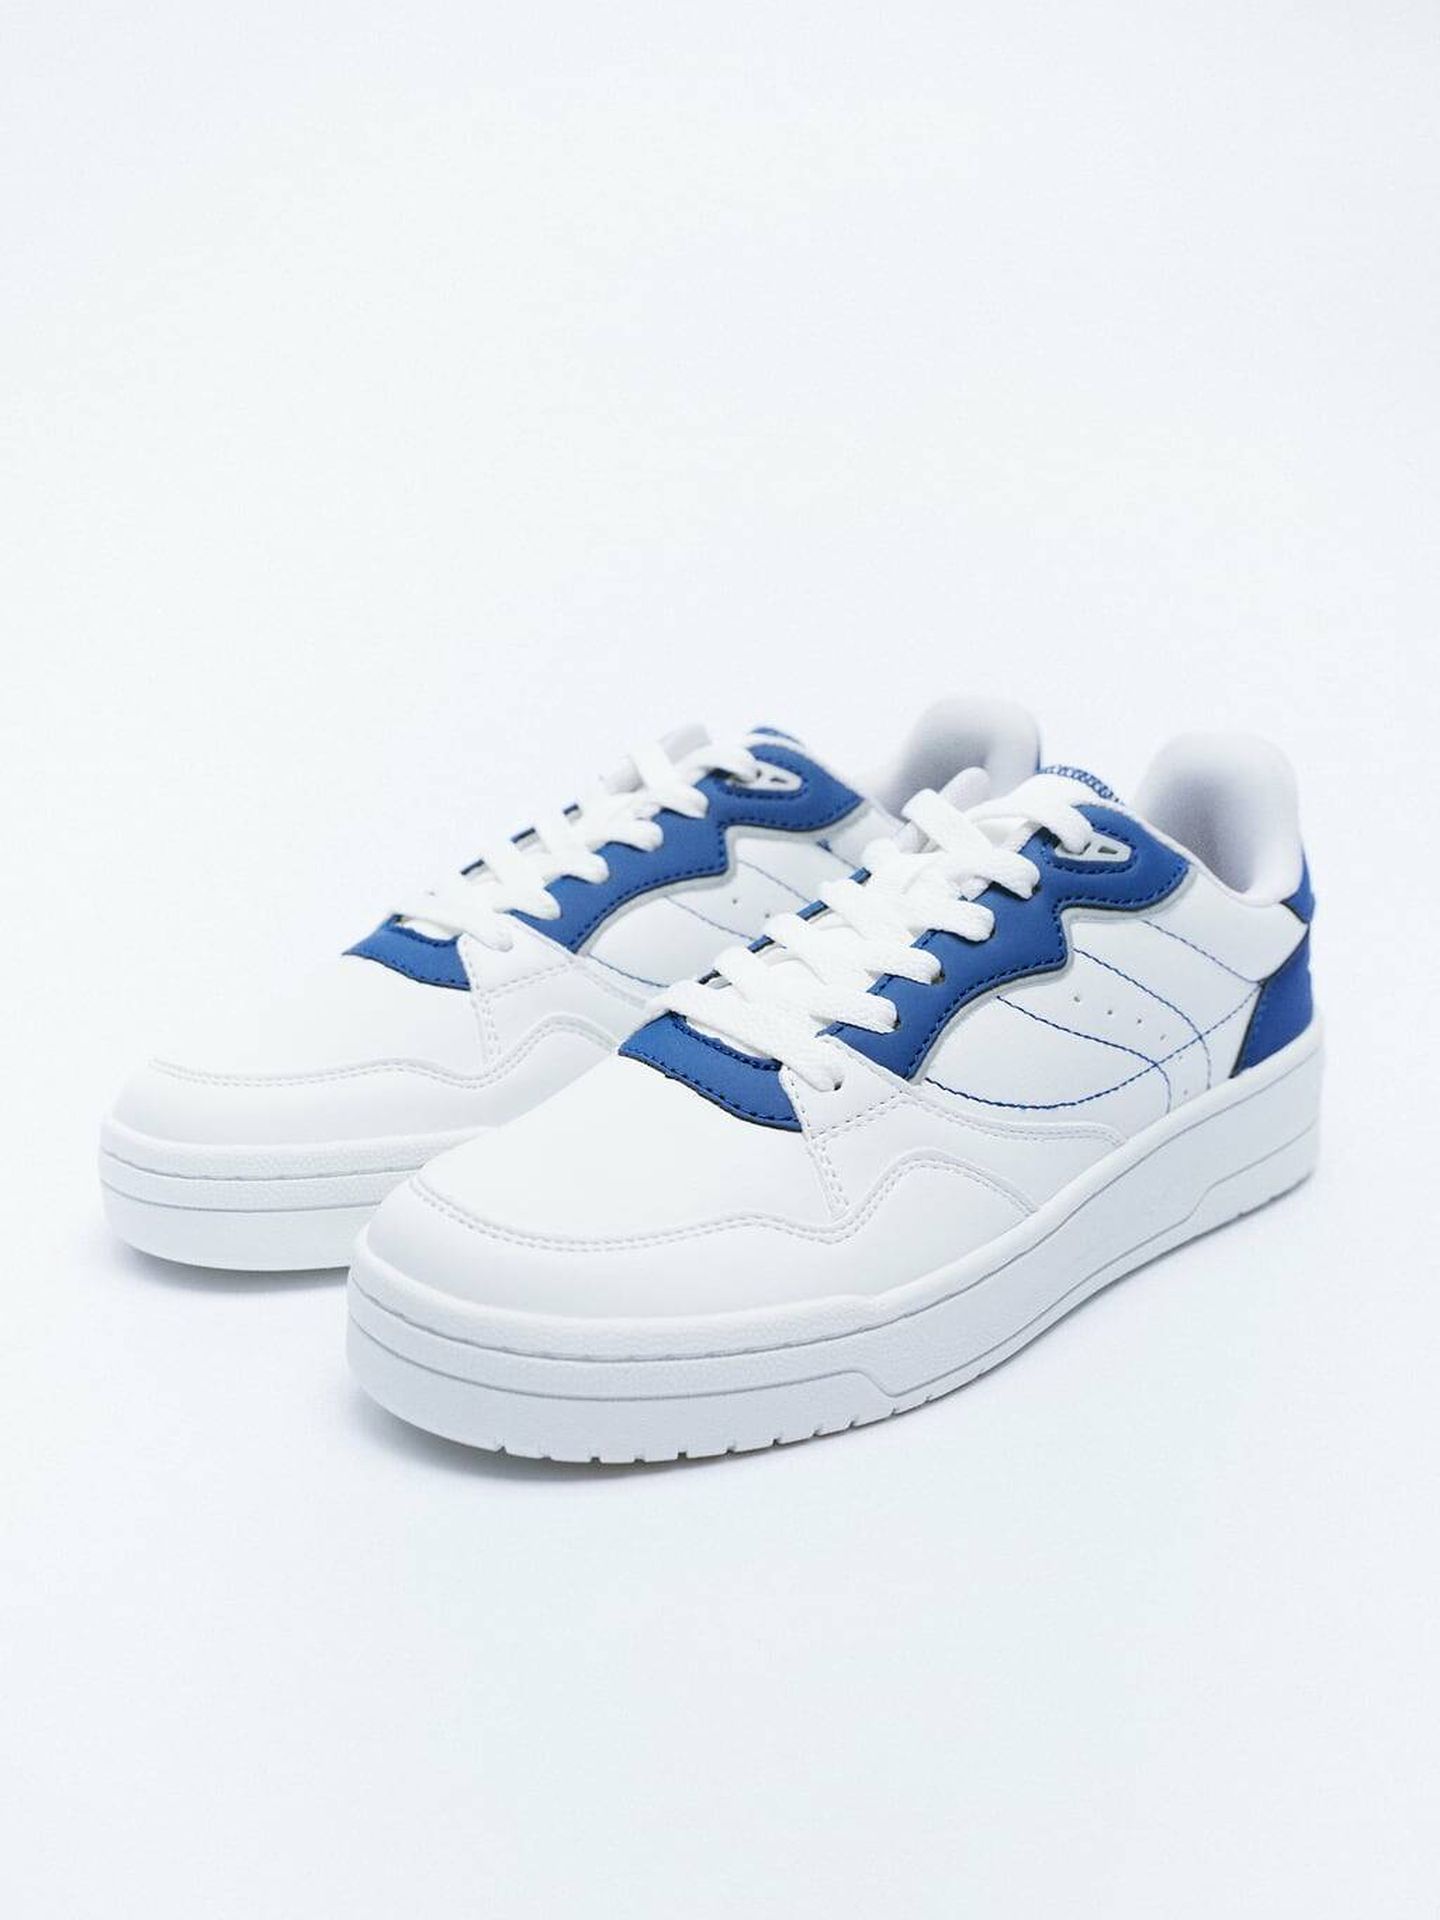 Zapatillas deportivas blancas de Zara. (Cortesía)